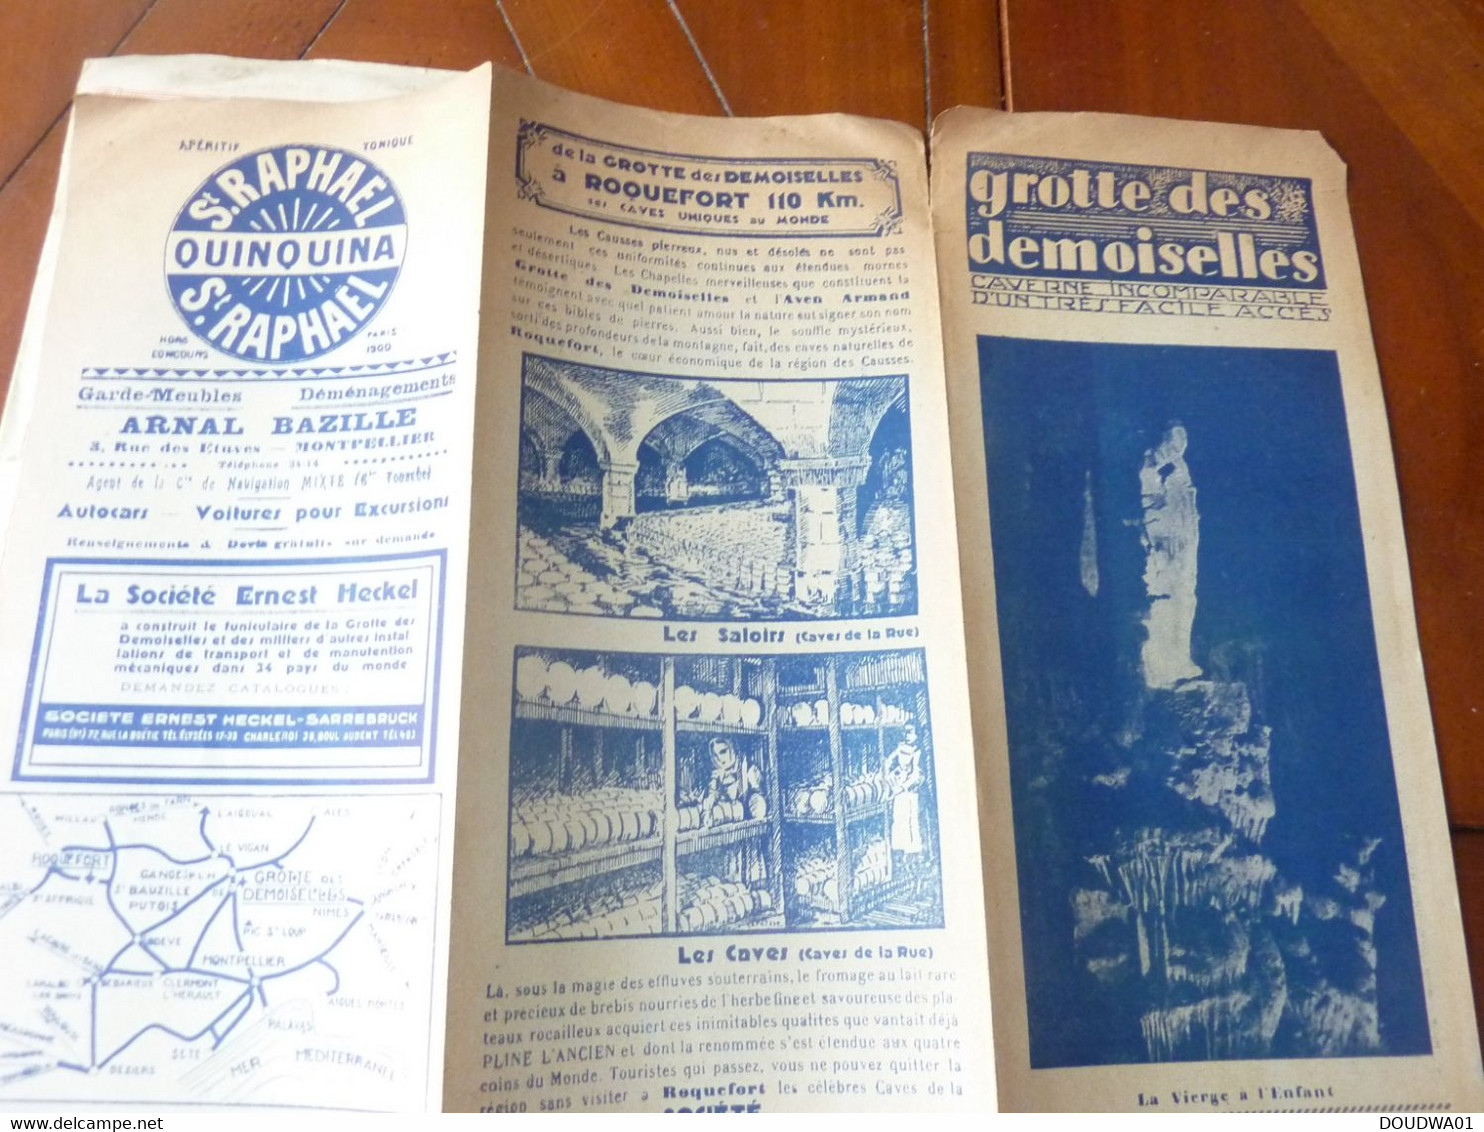 2 Depliants Touristiques Grotte Des Demoiselles - Publicite ST. RAPHAEL QUINQUINA P - Tourism Brochures